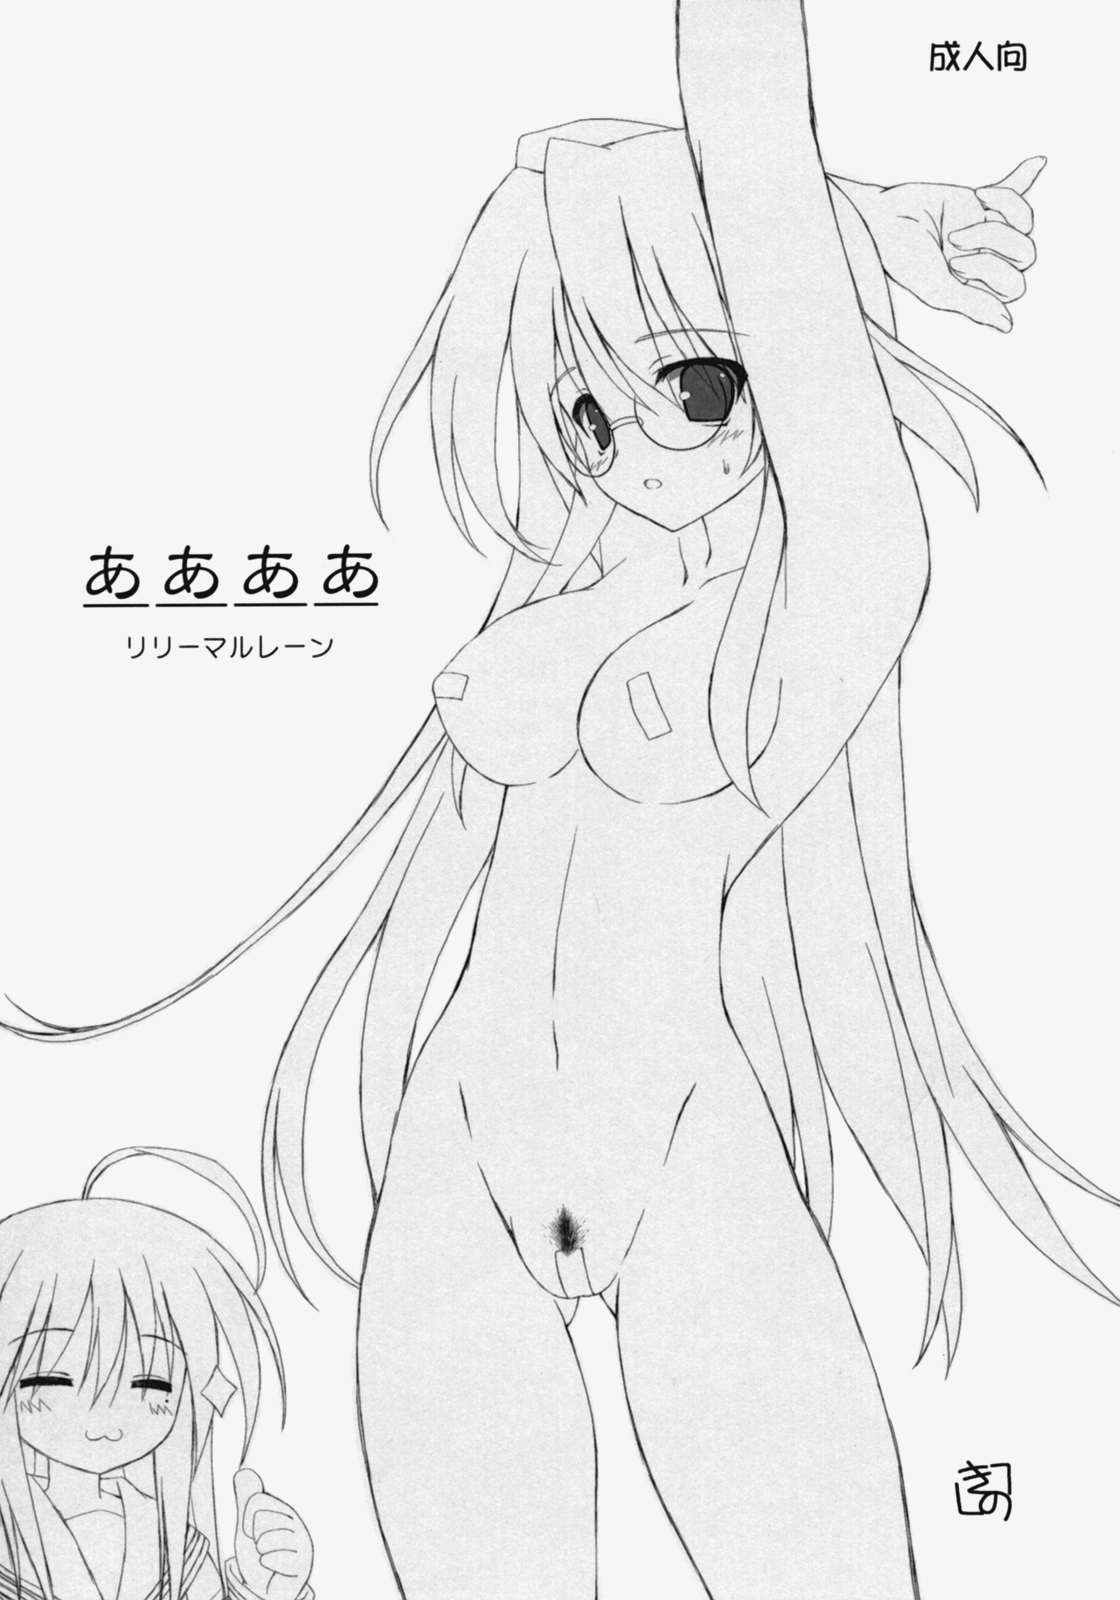 (SC36) [Lili Marleen (Kinohara Hikaru)] aaaa (Lucky Star) page 1 full